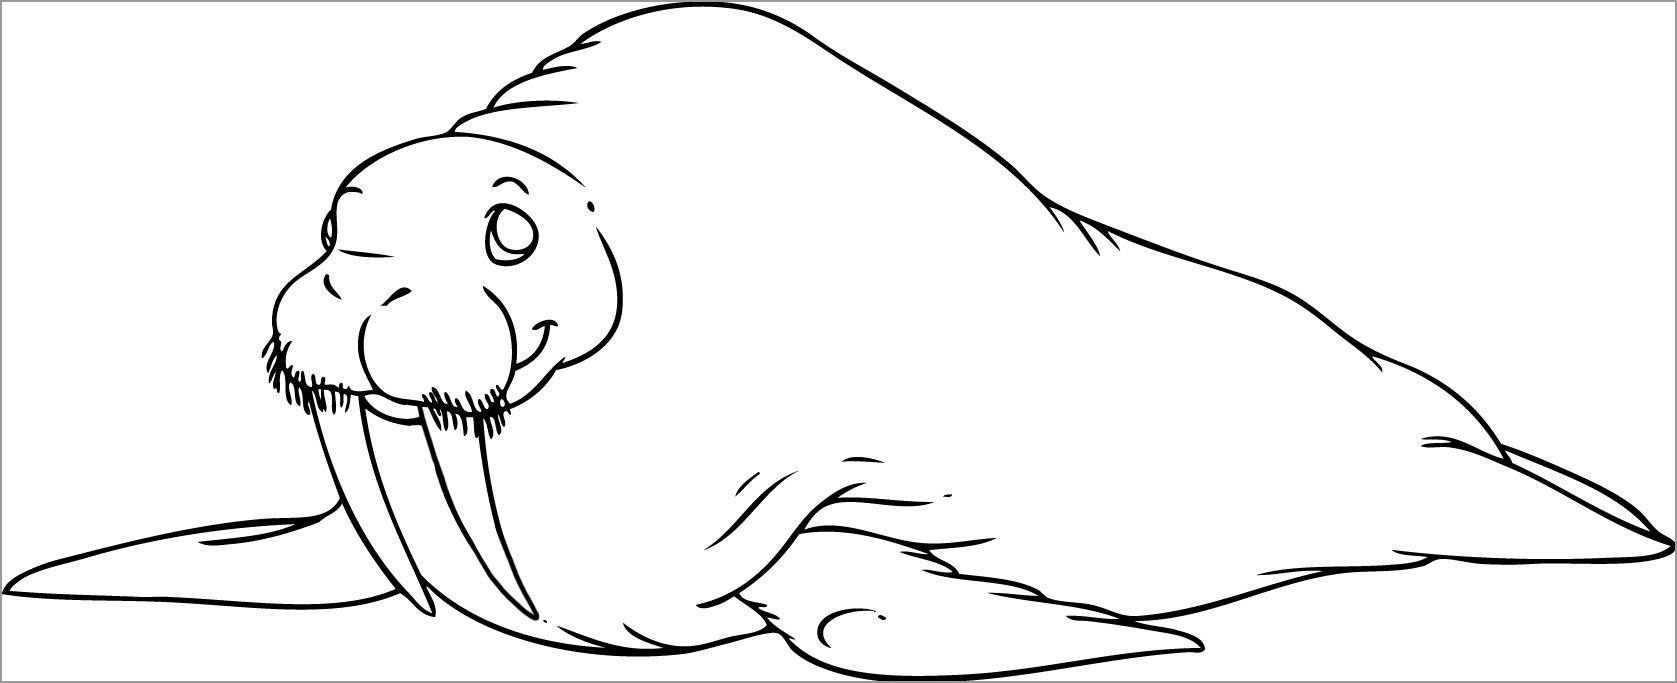 Walrus Coloring Page Preschool